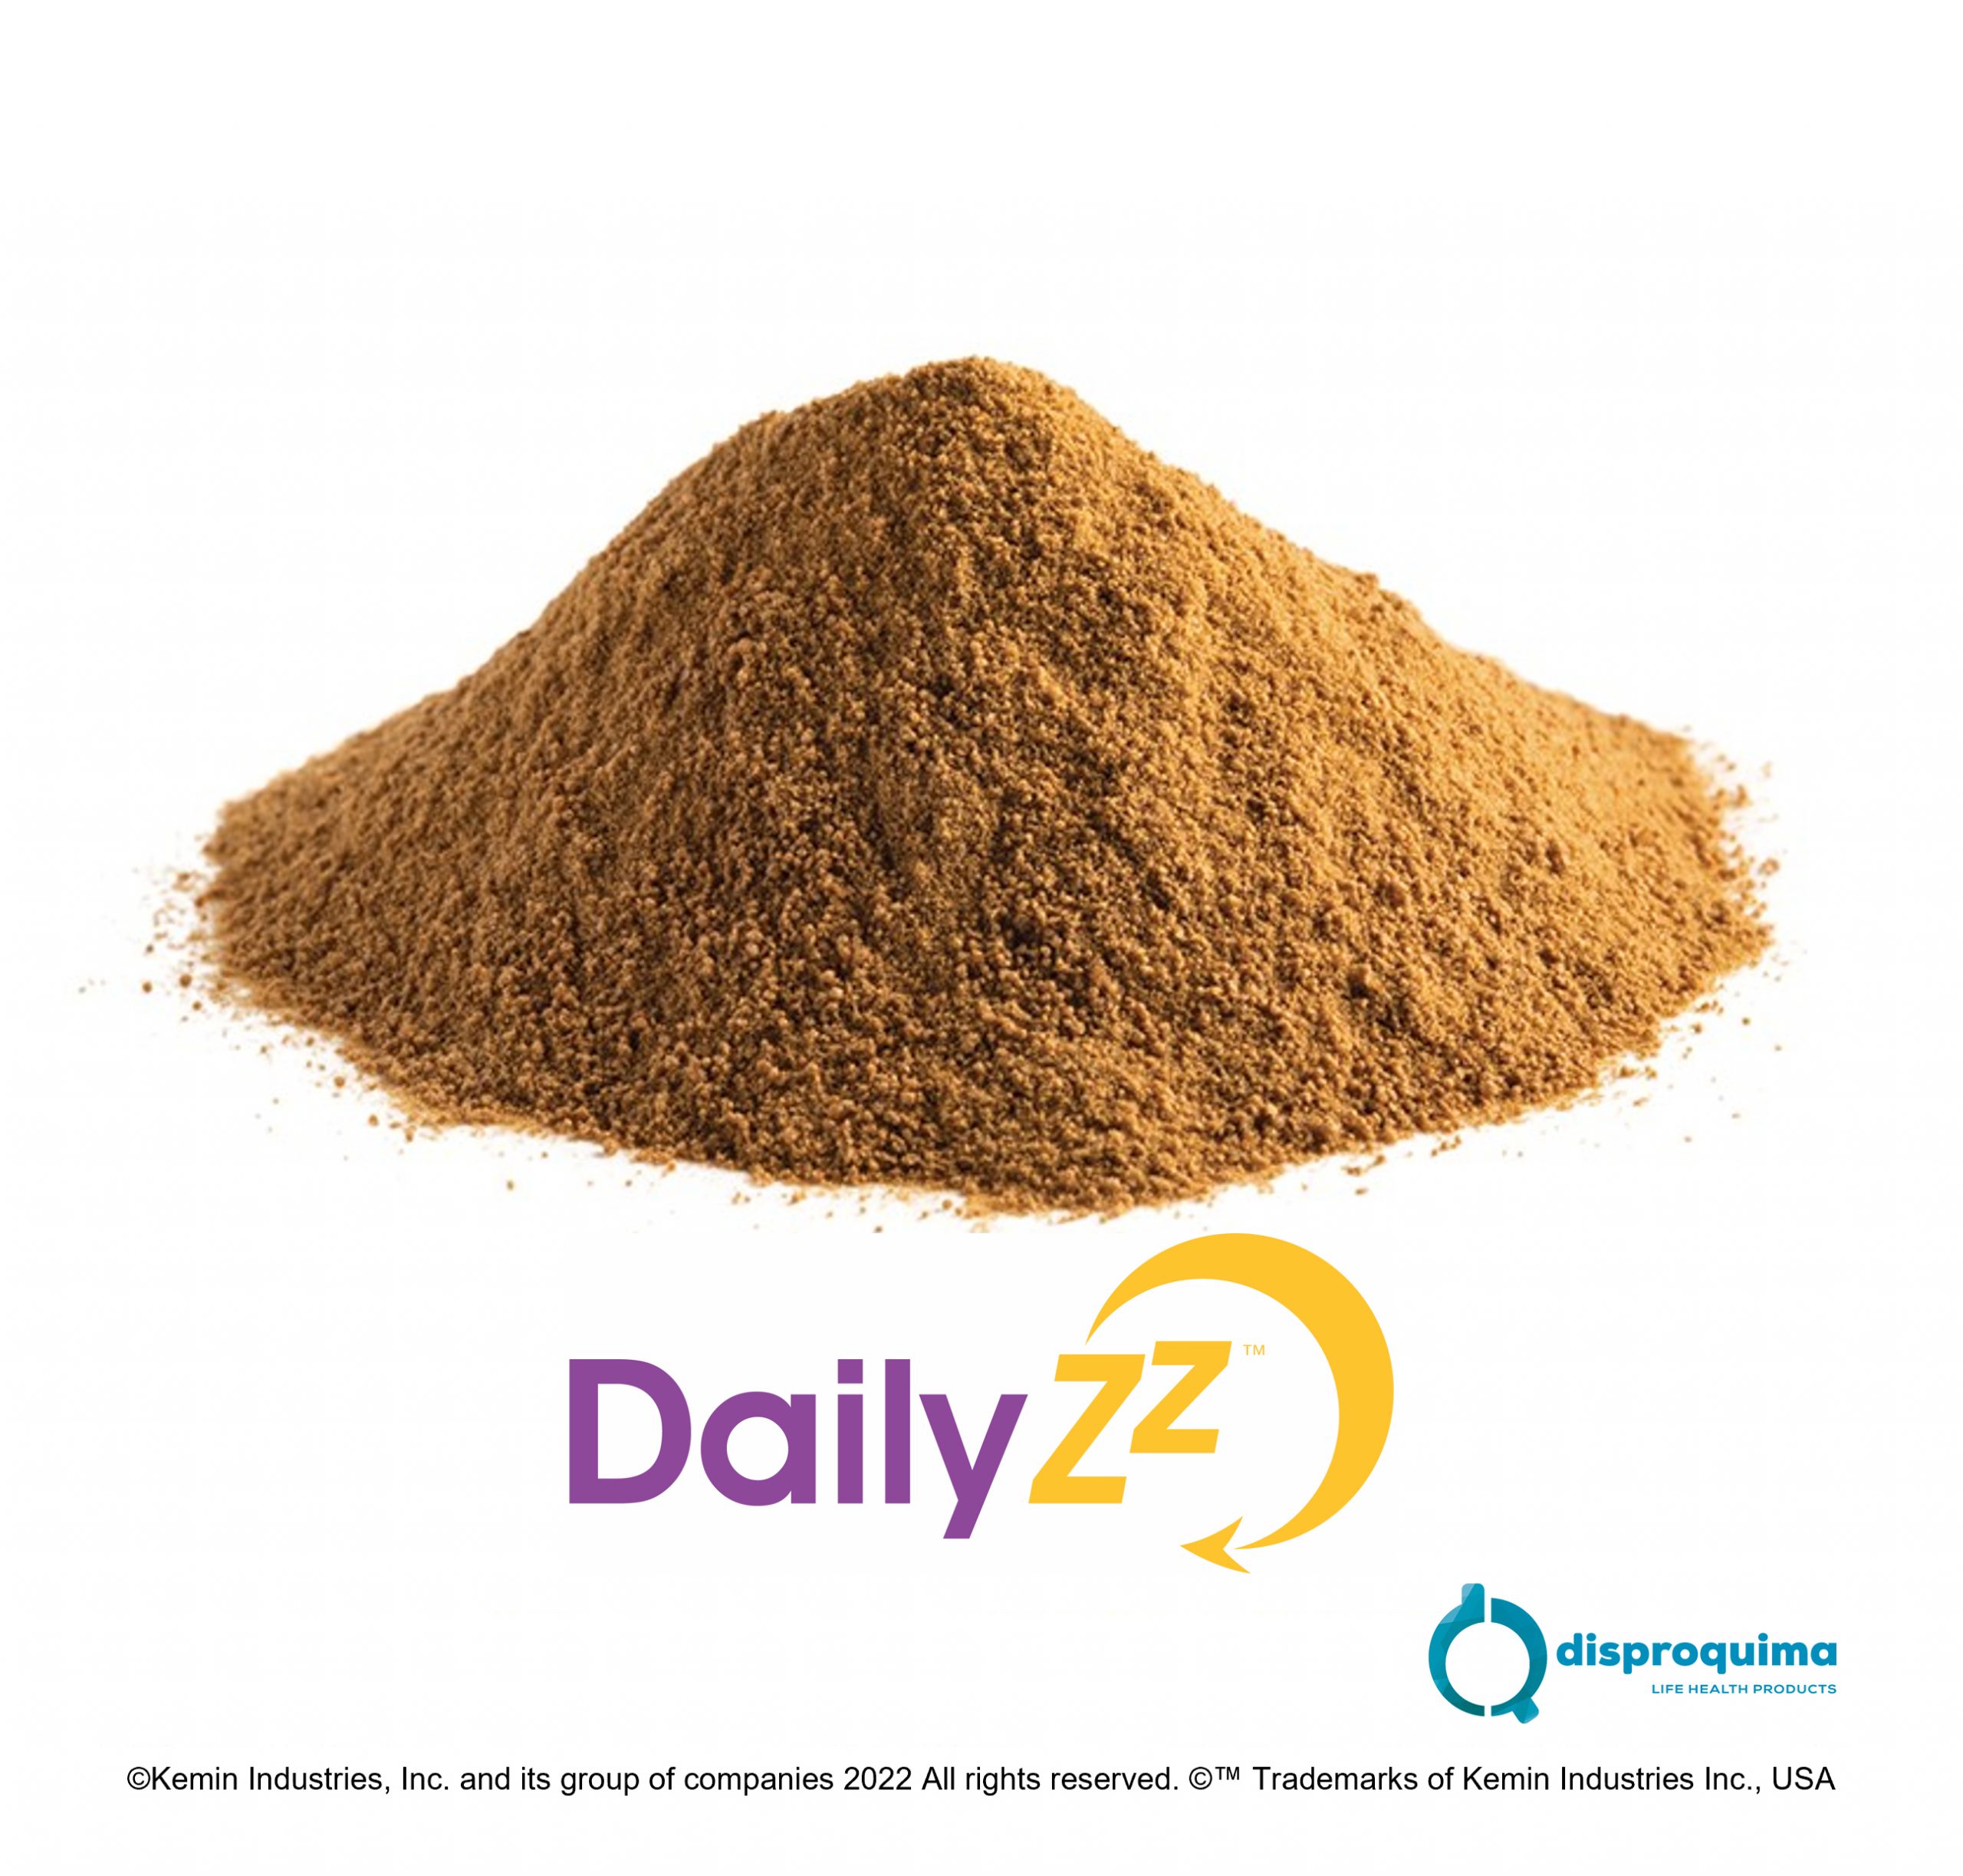 En este momento estás viendo Disproquima presentará tres ingredientes dentro de la Premium Substances de la Nutraceuticals Europe 2022 : DailyZz™, FLAVOXALE®, Natural Vitamin K2 mediQ7